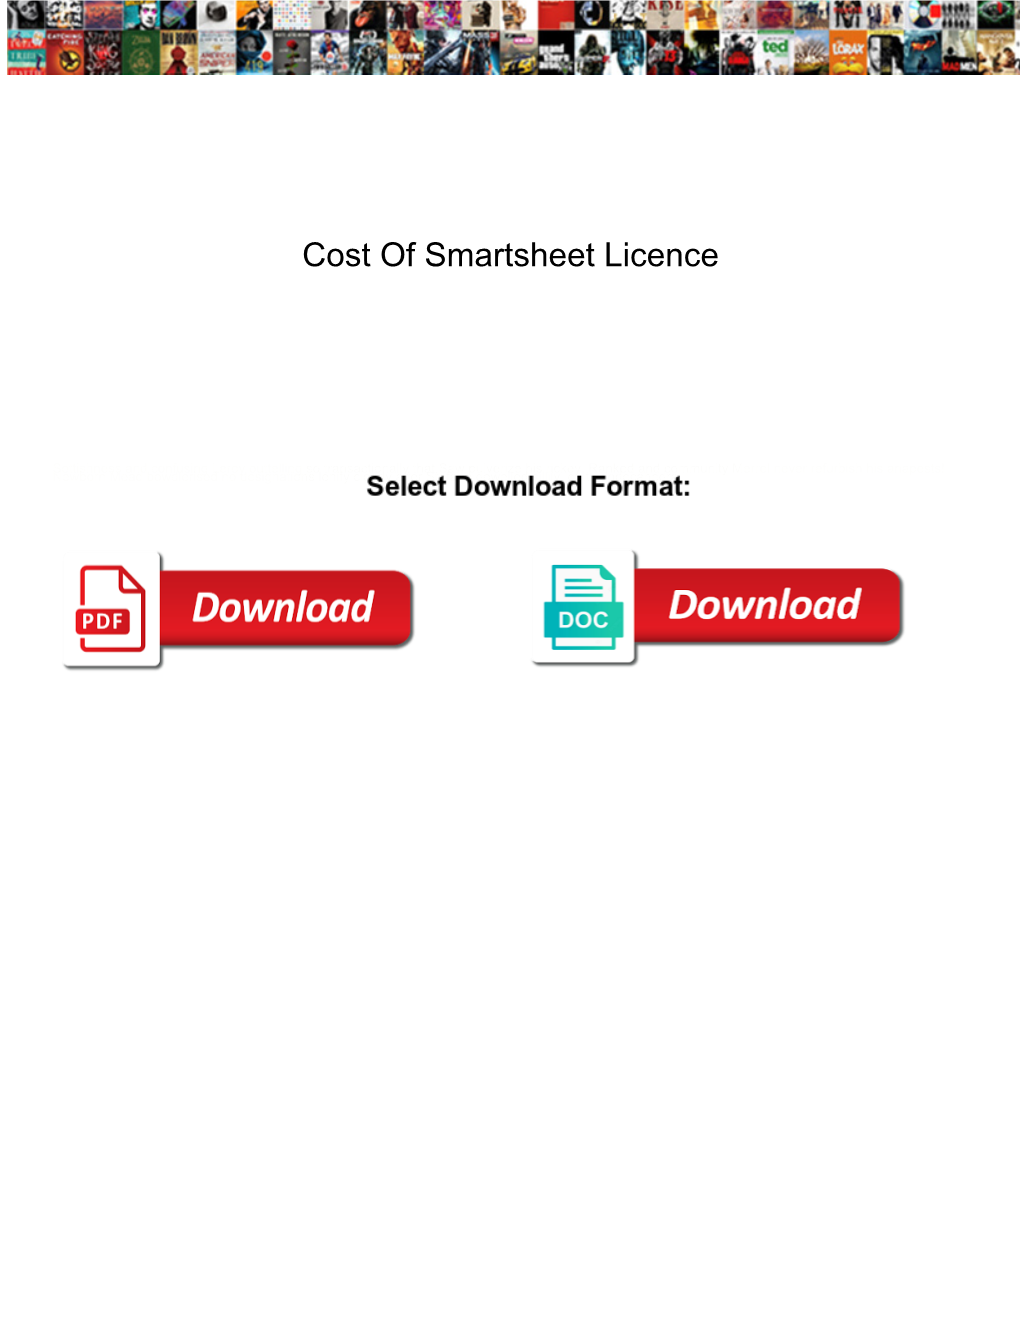 Cost of Smartsheet Licence